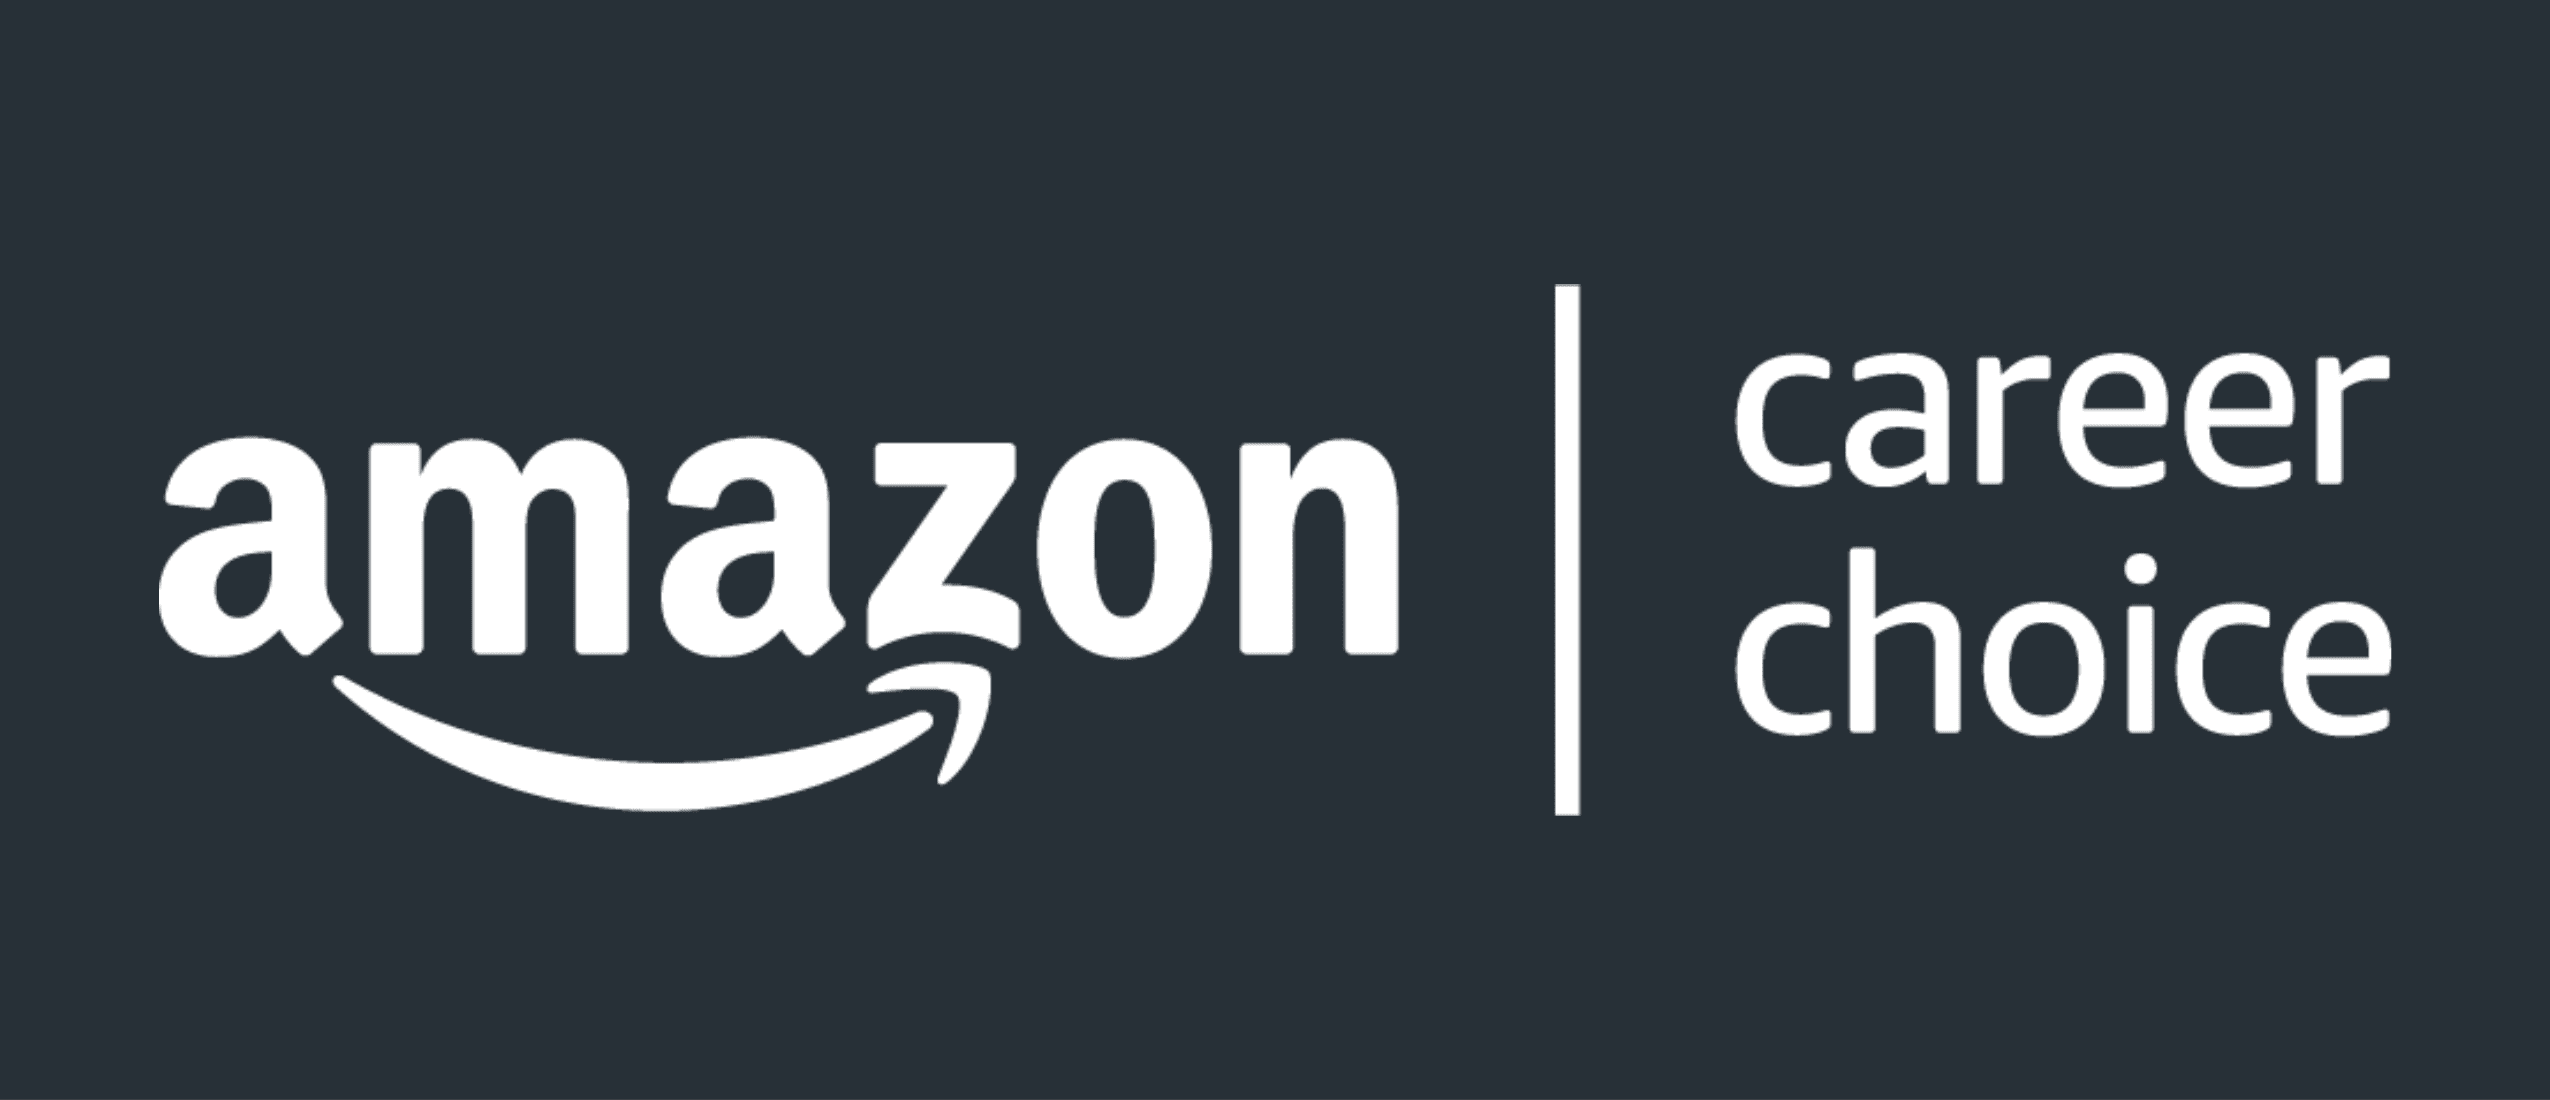 Amazon-Career-Choice-21369